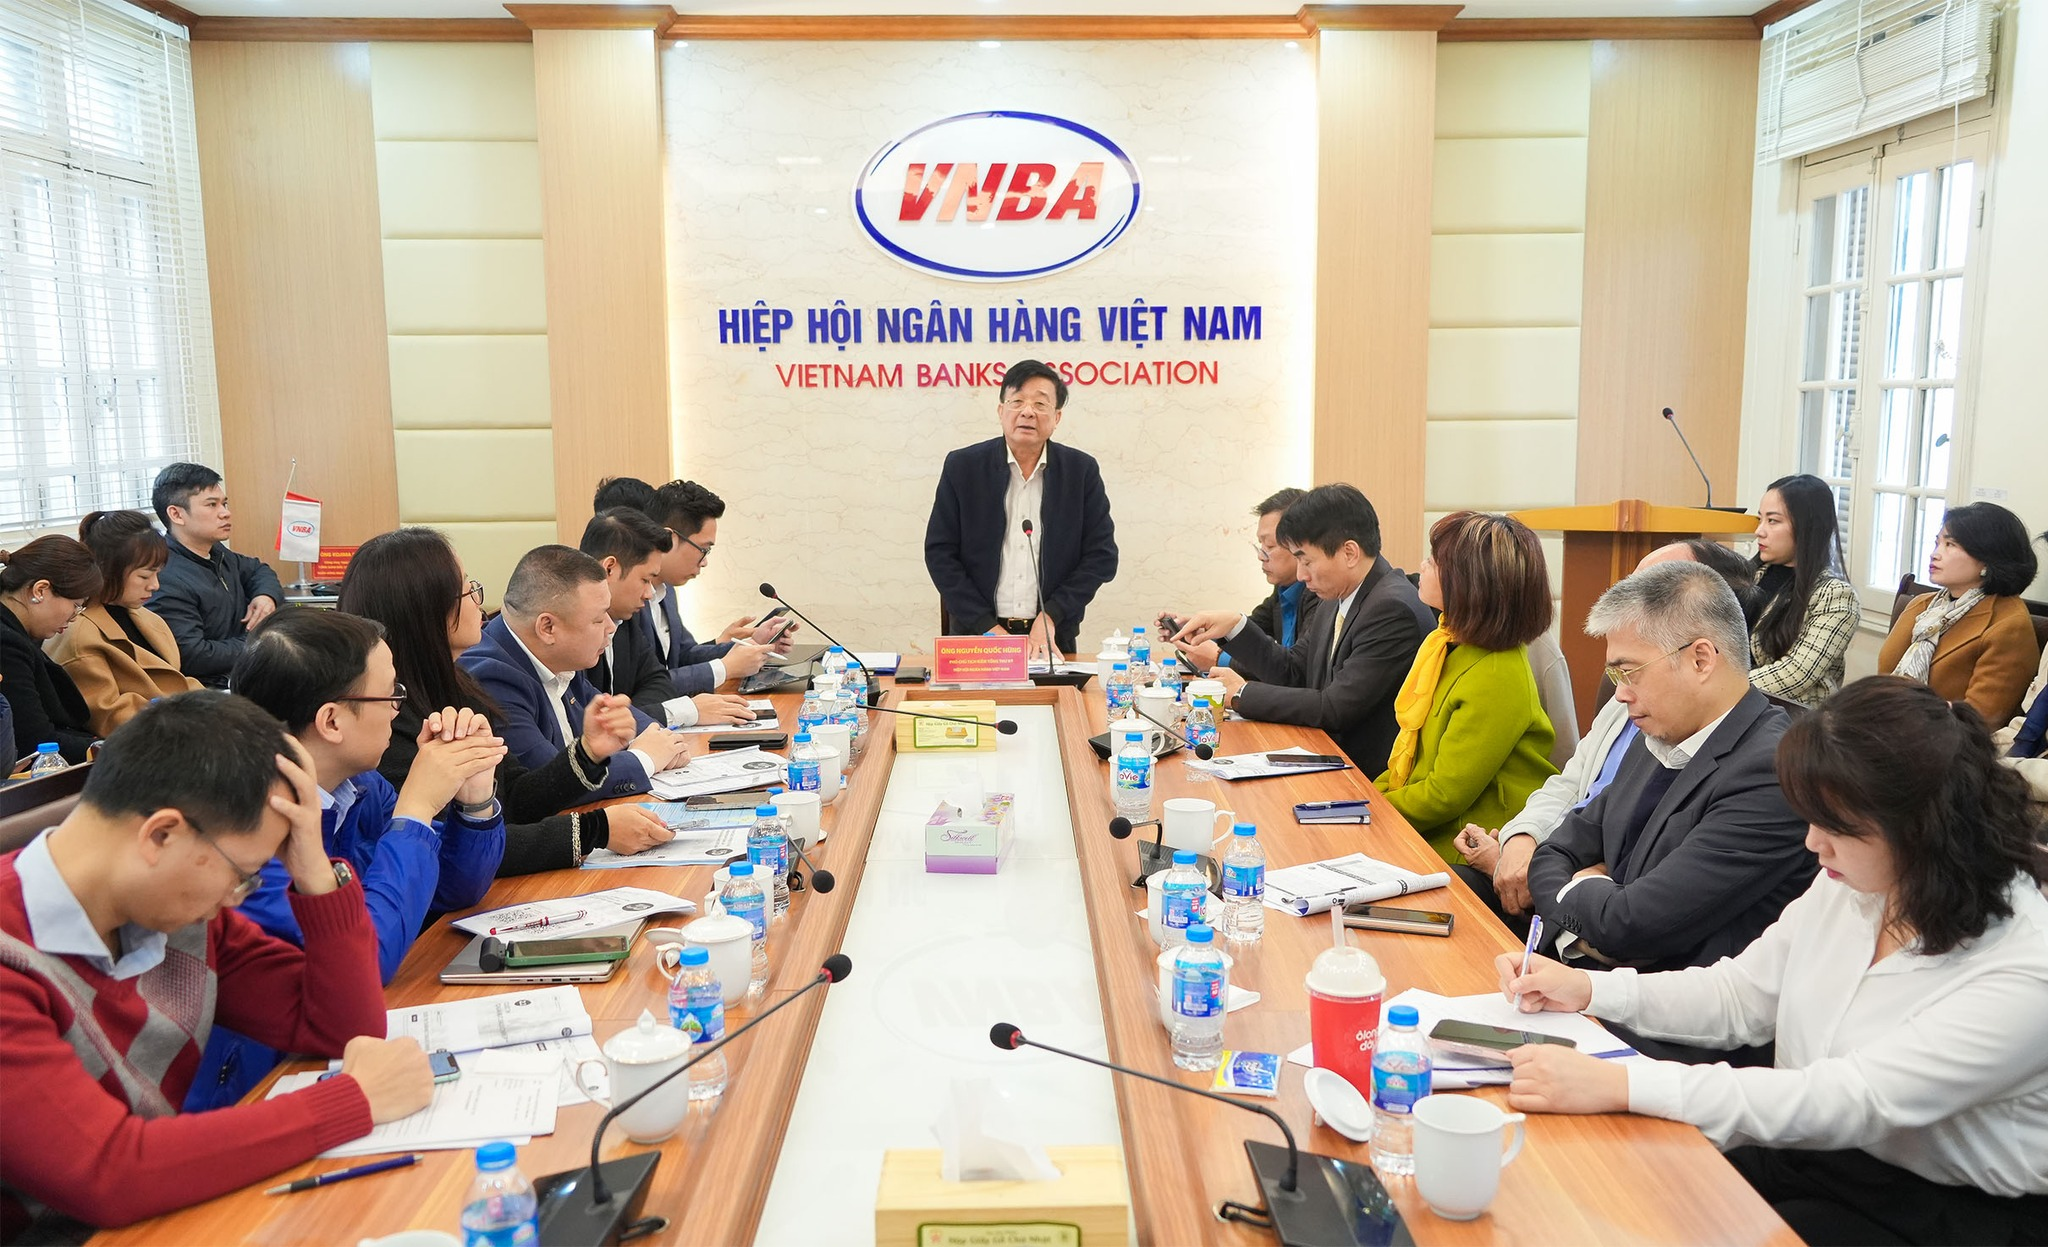 Hiệp hội Ngân hàng Việt Nam (VNBA) đã thể hiện được vai trò đại diện, là “chỗ dựa” vững chắc của các Tổ chức hội viên